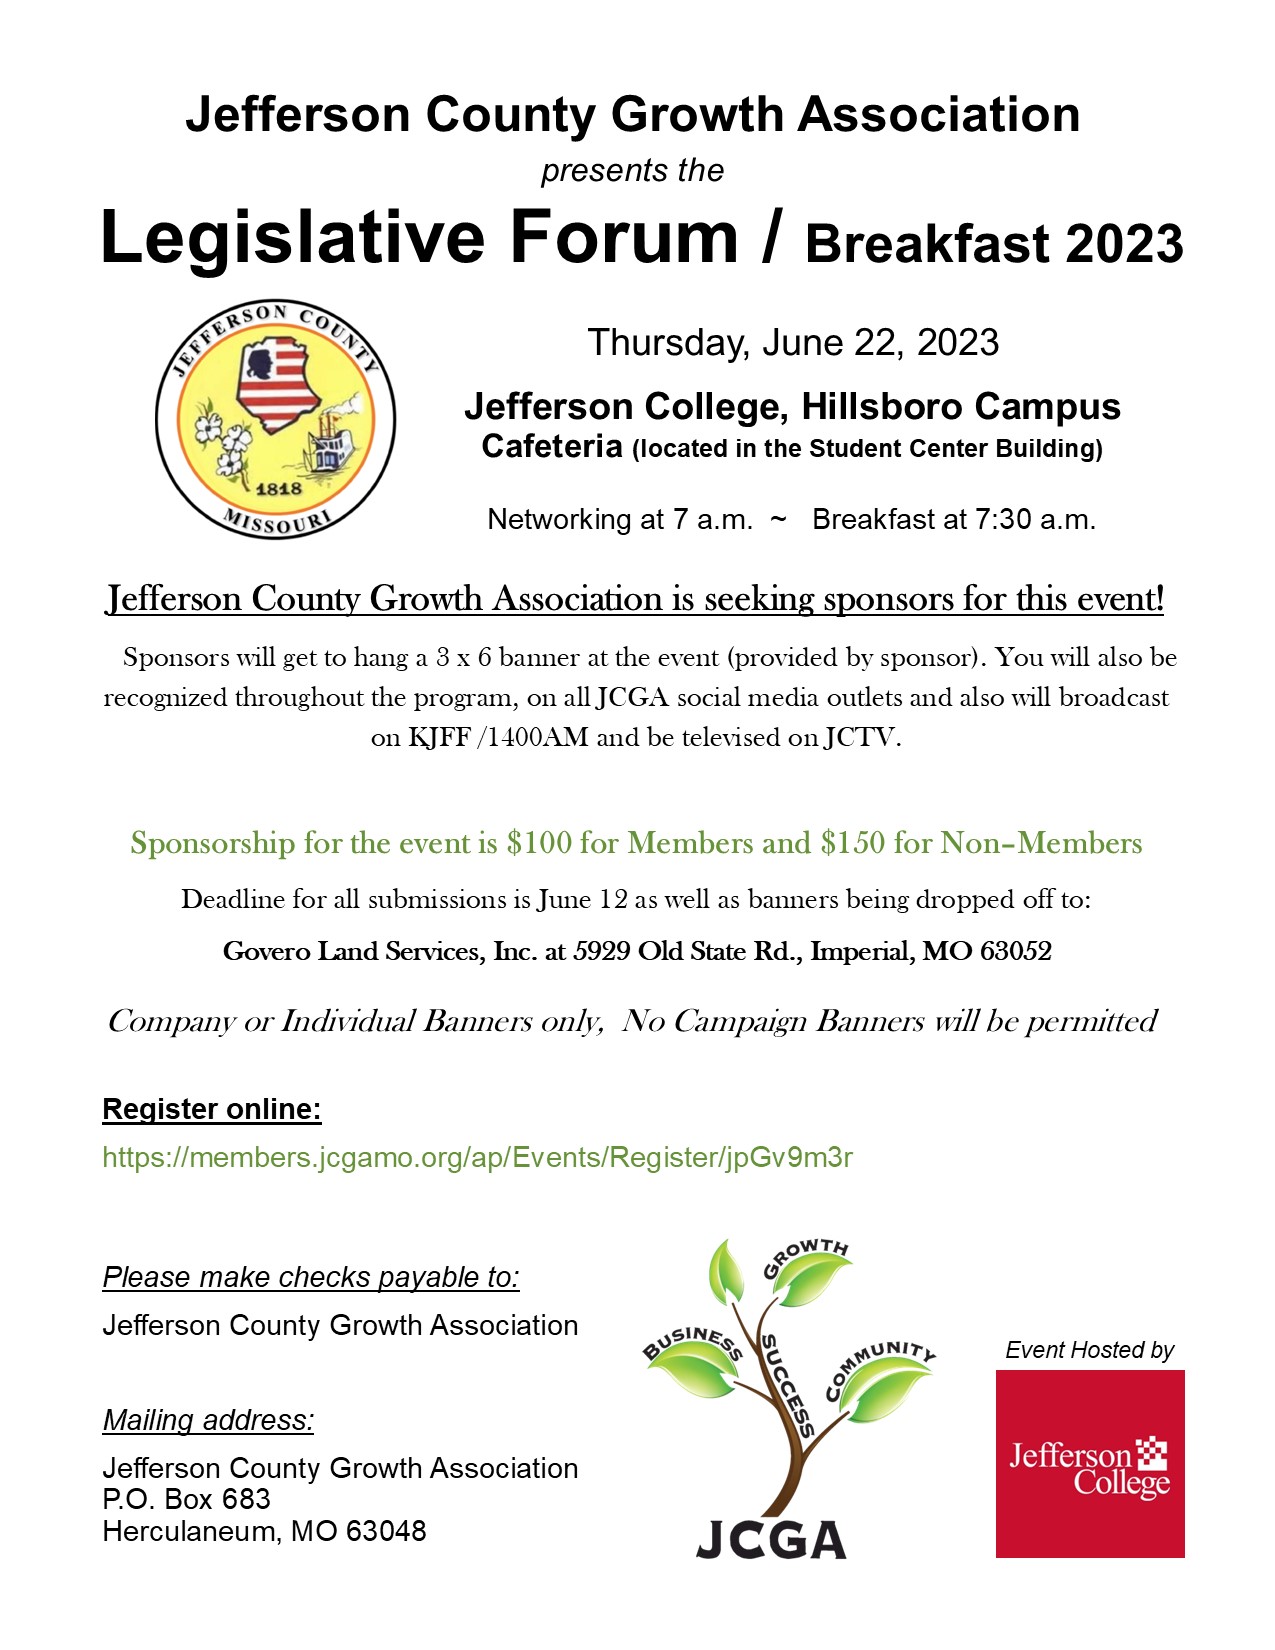 Sponsor Letter for 2023 Legislative Forum Breakfast